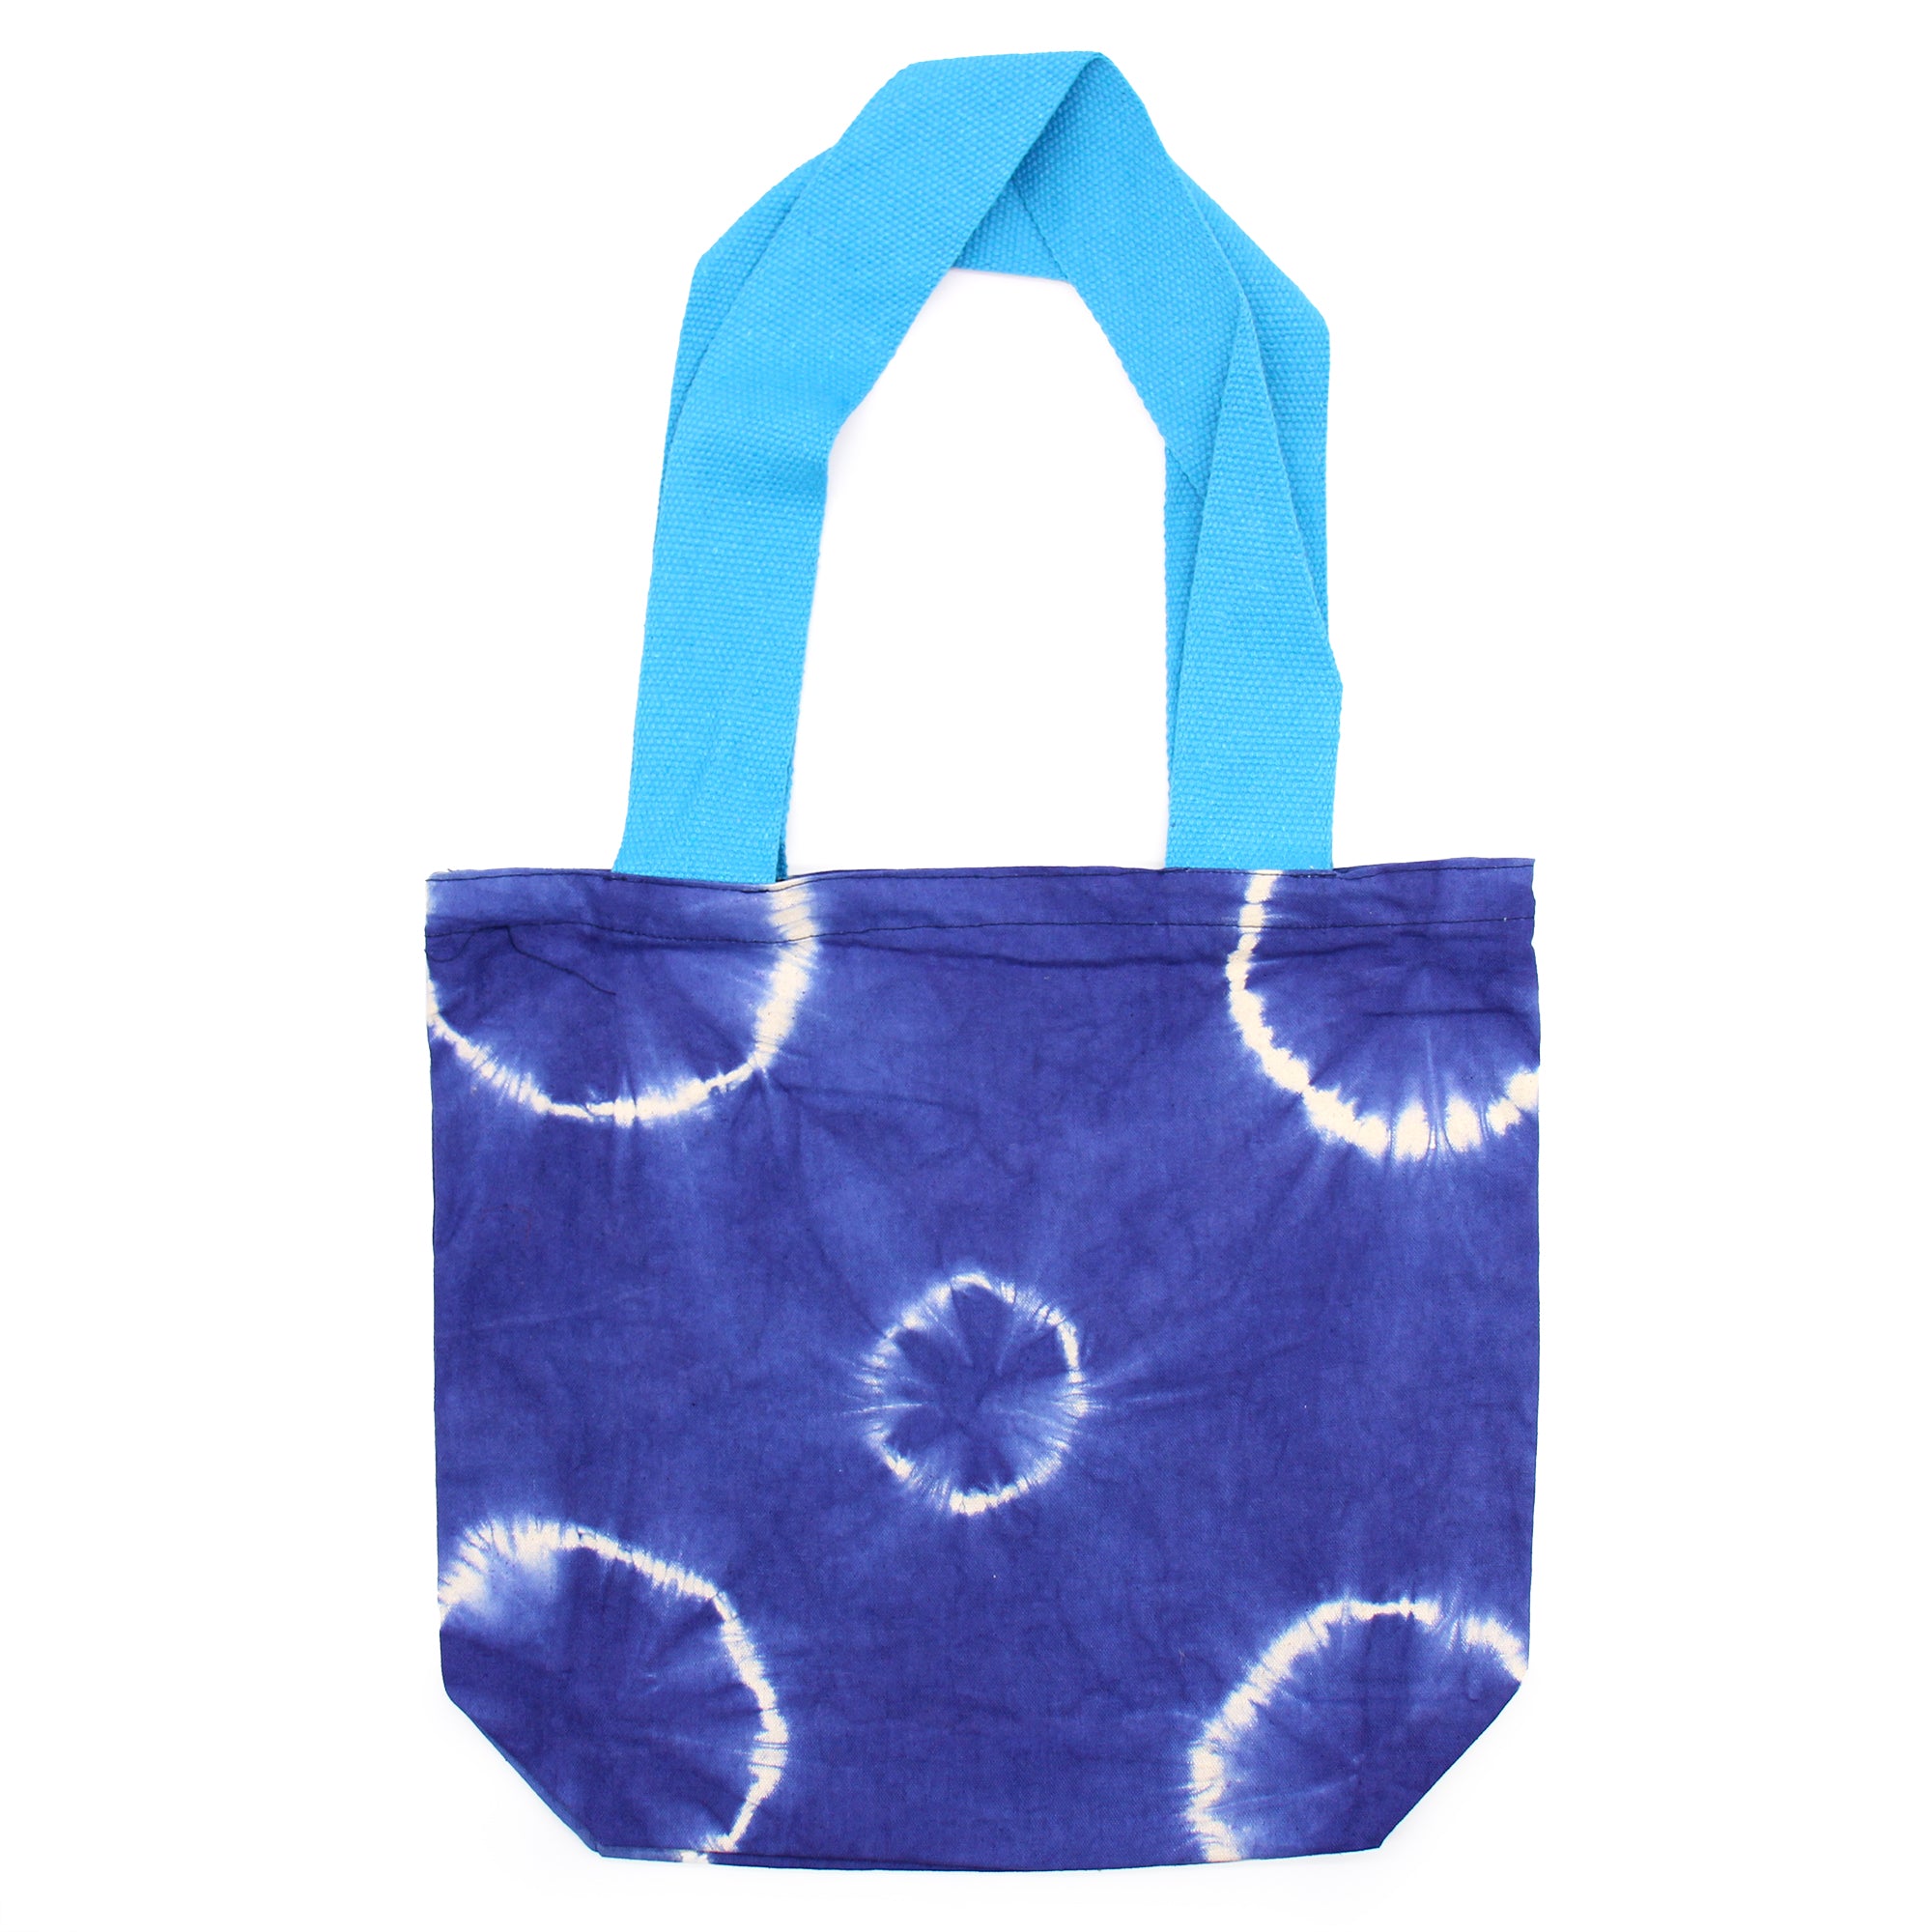 Natural Tye-Dye Cotton Bag (8oz) - 38x42x12cm - Blue Rings - Blue Handle